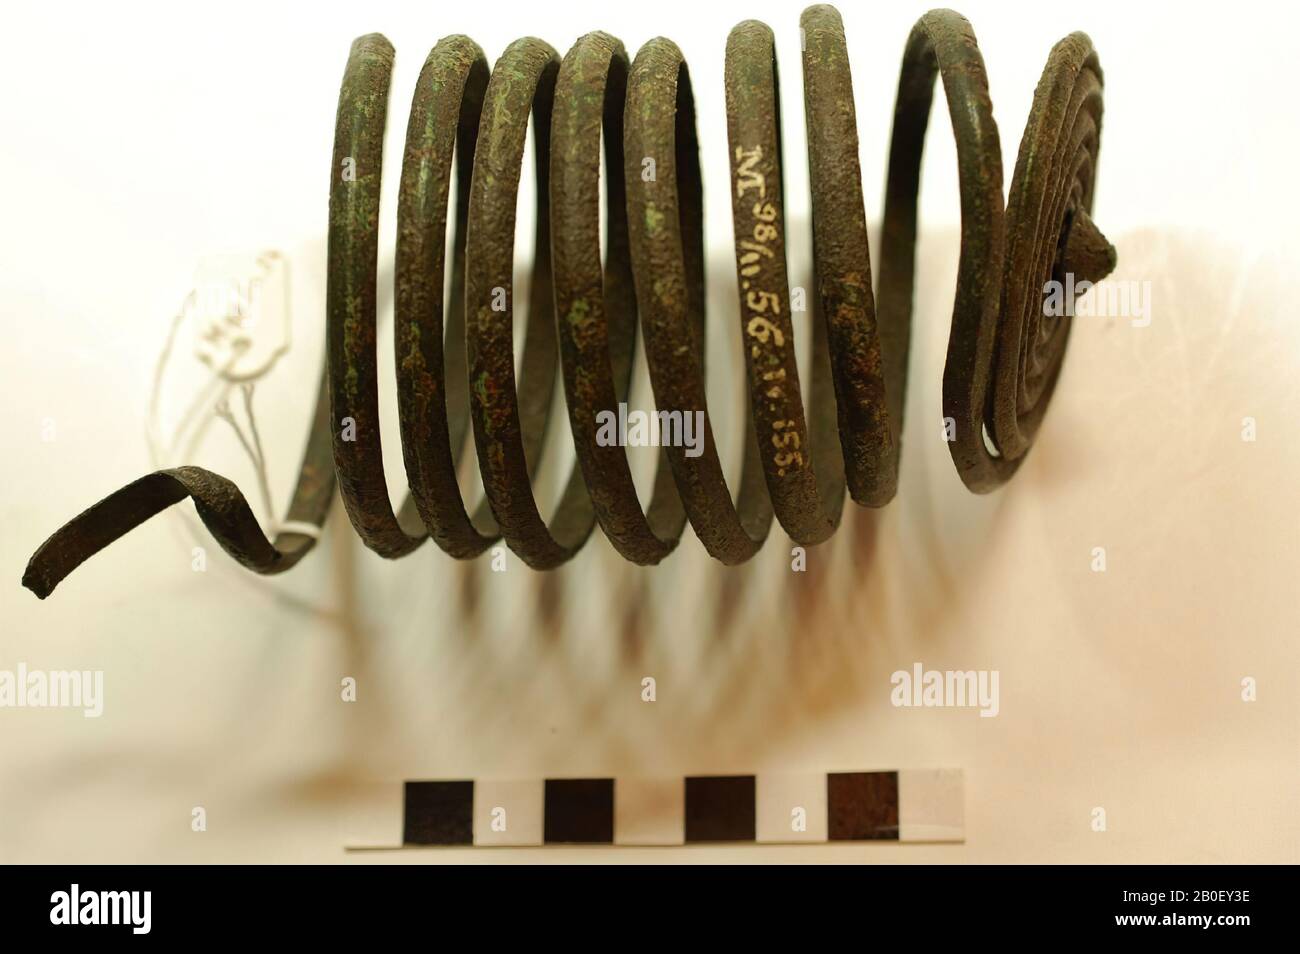 Espiral, metal, bronce, 13,5 x 7,8 x 7,5 cm, prehistórico, Hungría, desconocido, Weissenburger Commitaat Foto de stock